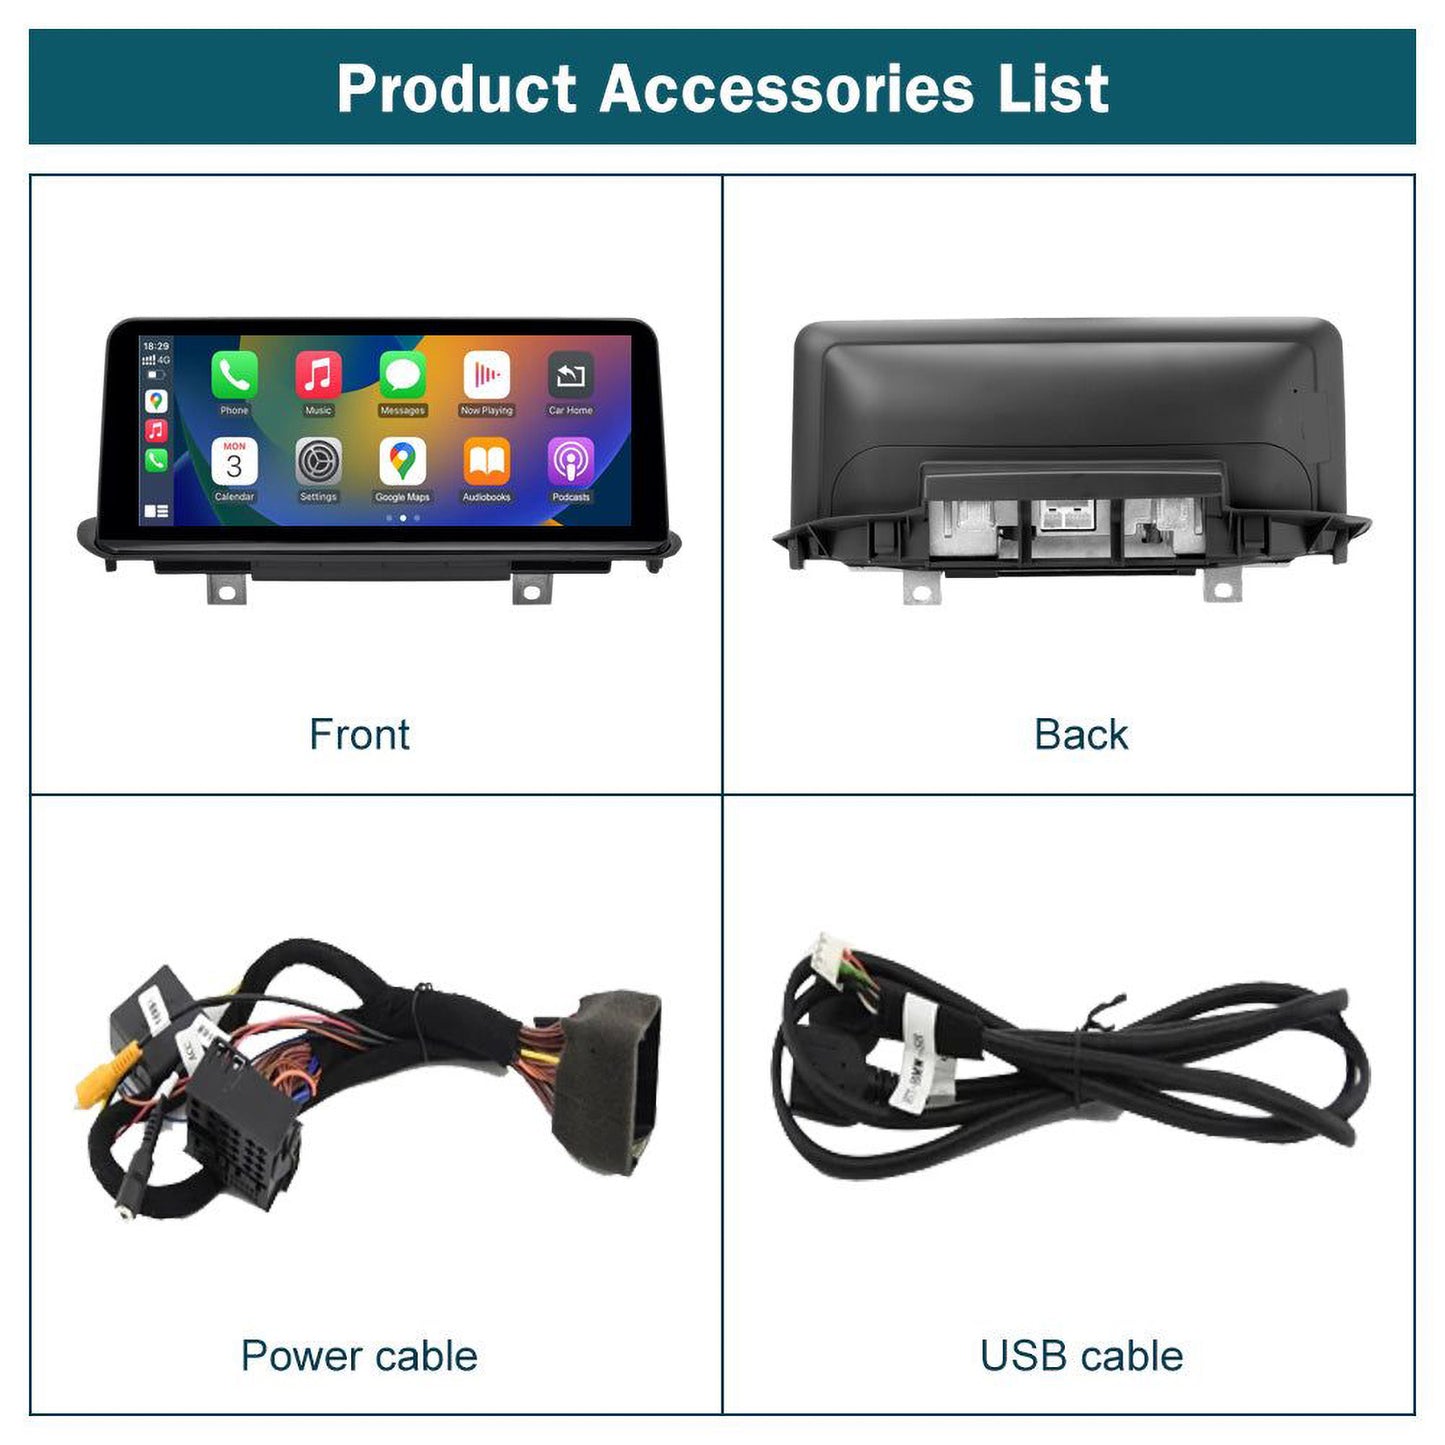 CarProKit Wireless CarPlay Android Auto Mirror-Link 10.25" HD Linux Replacement Screen Retrofit Kit for BMW X5 F15 F85 X6 F16 F86 2014-2016 NBT System